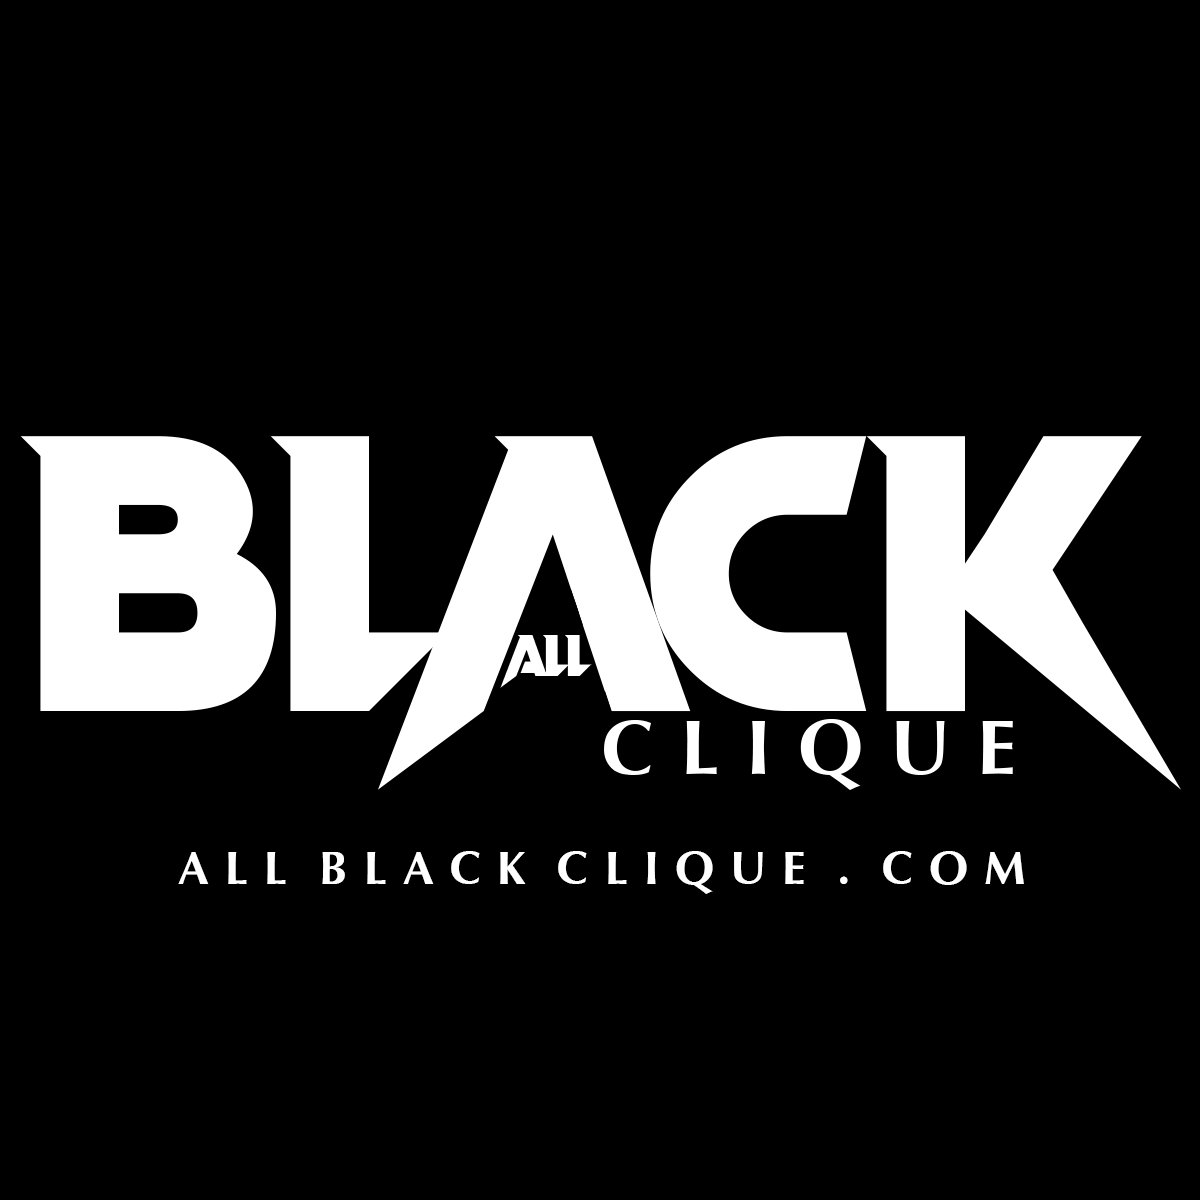 Contact | All Black Clique